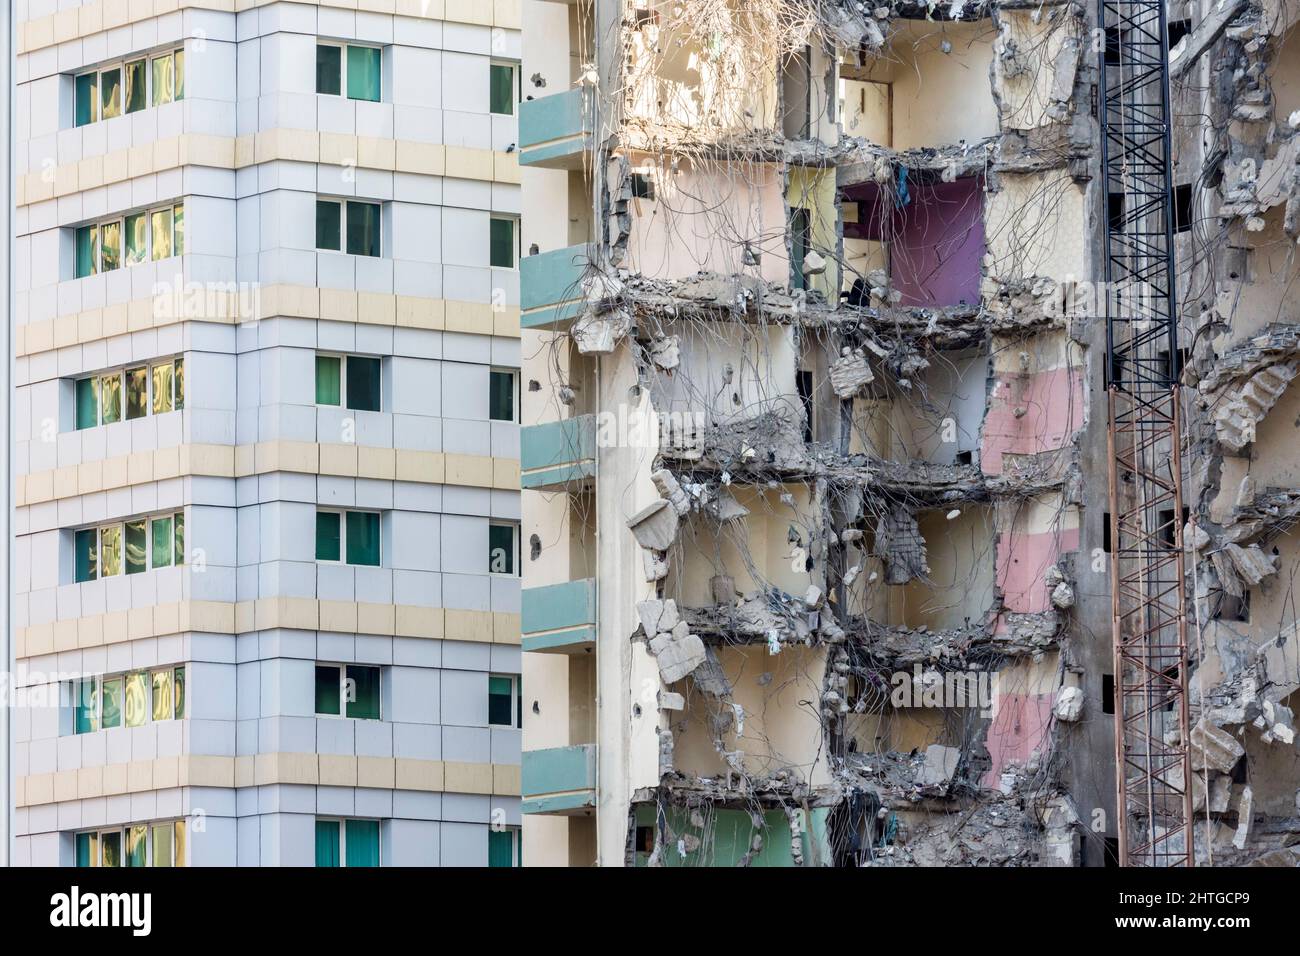 Building demolished in Abu Dhabi, United Arab Emirates Stock Photo